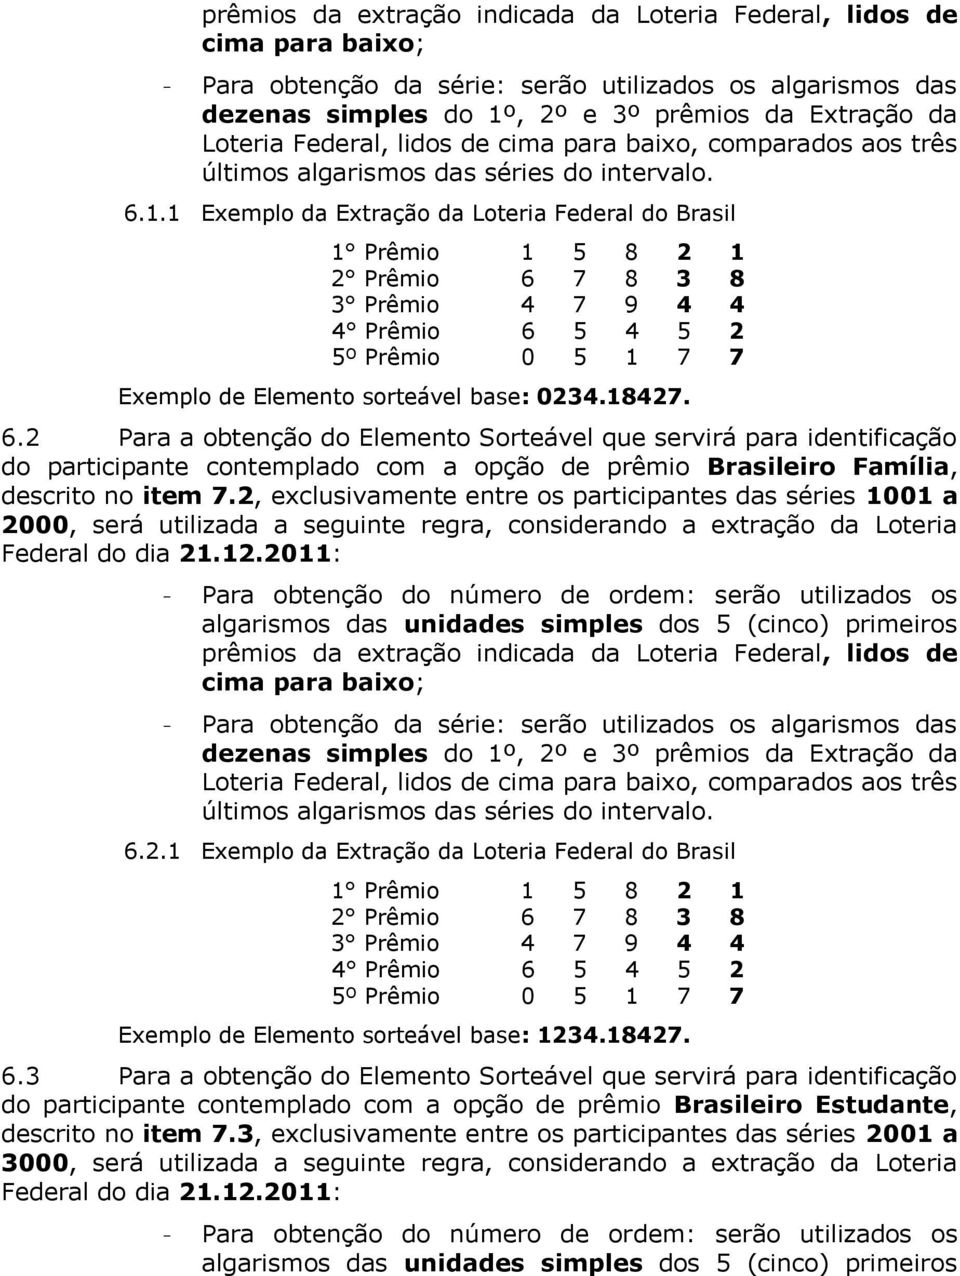 1 Exemplo da Extração da Loteria Federal do Brasil 1 Prêmio 1 5 8 2 1 2 Prêmio 6 